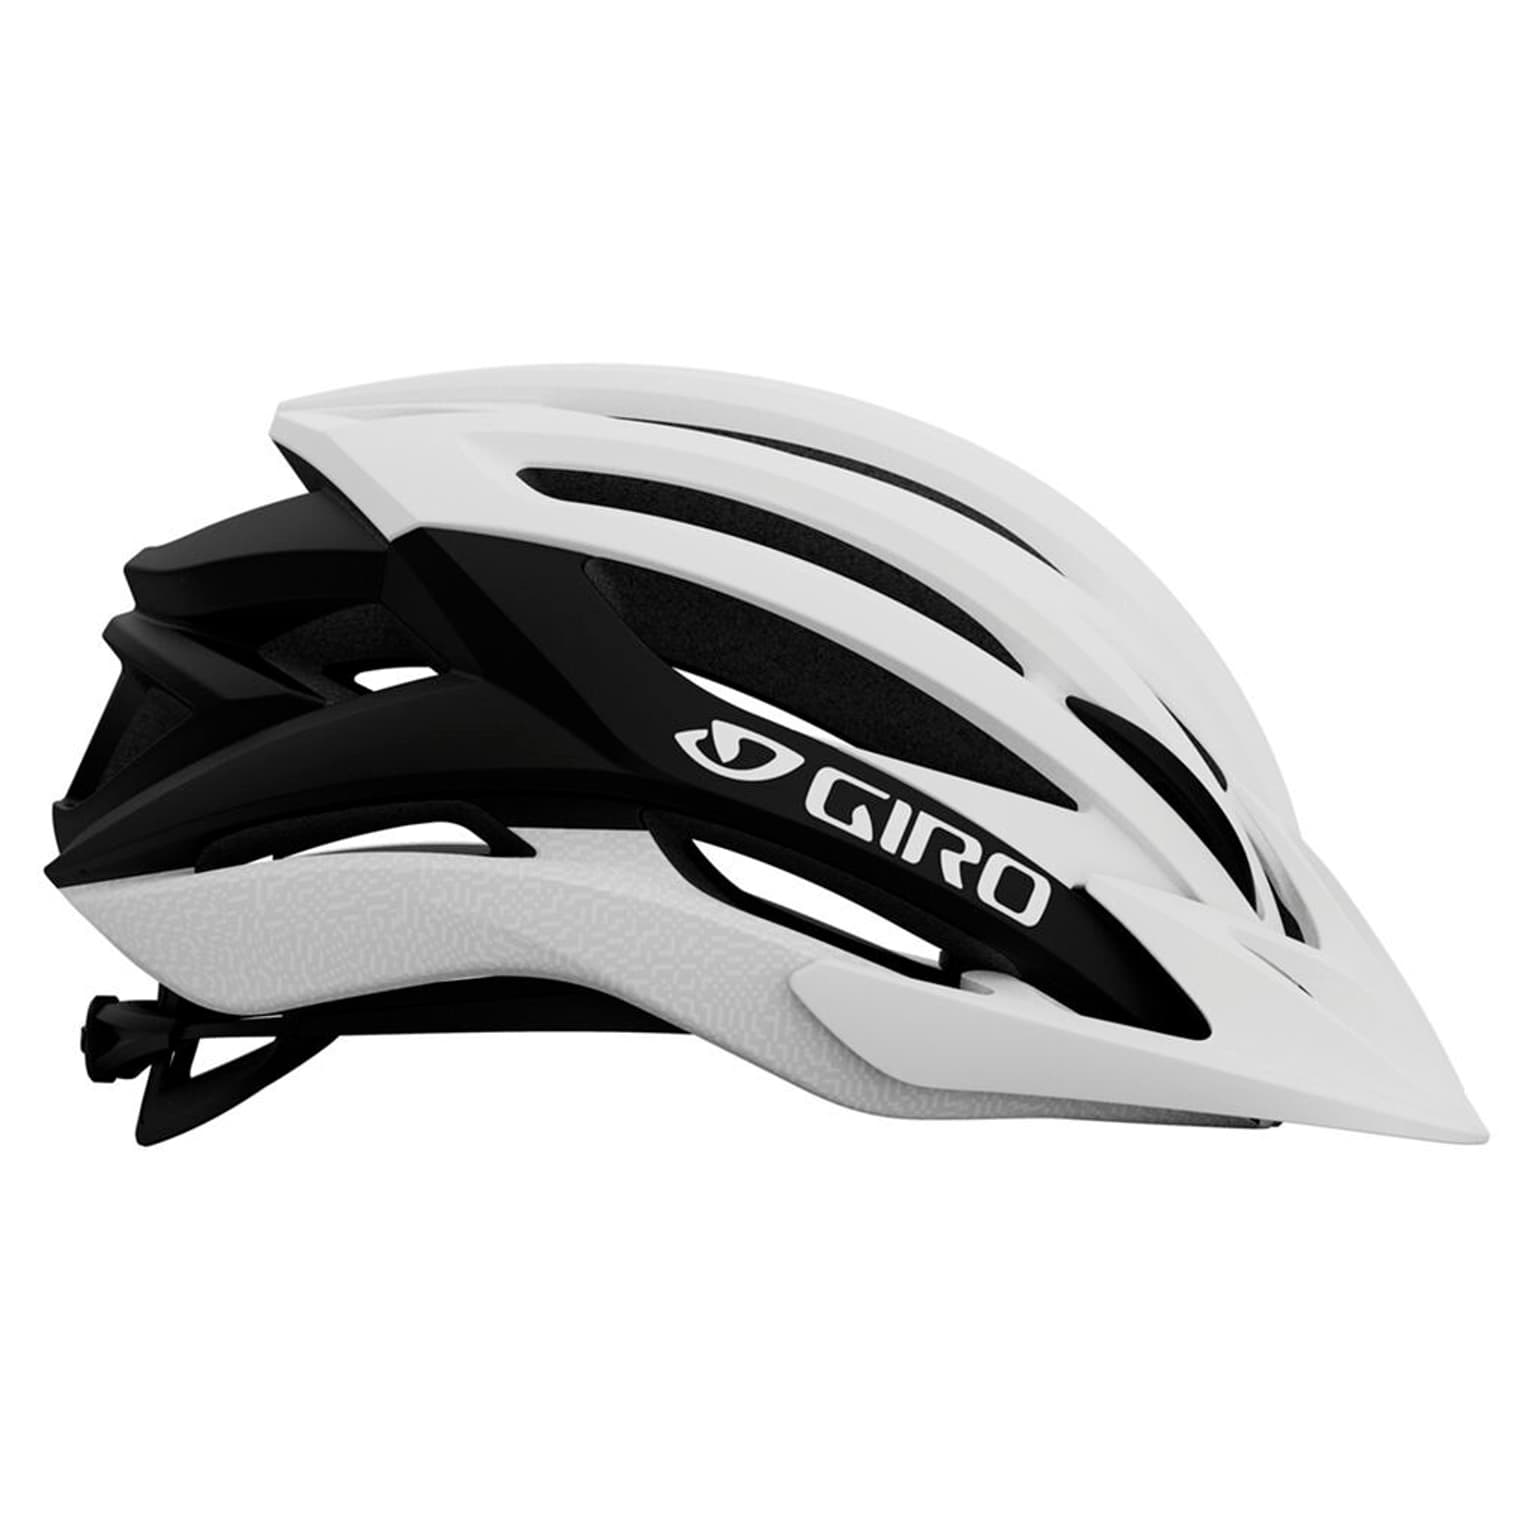 Giro Giro Artex MIPS Helmet Velohelm weiss 2